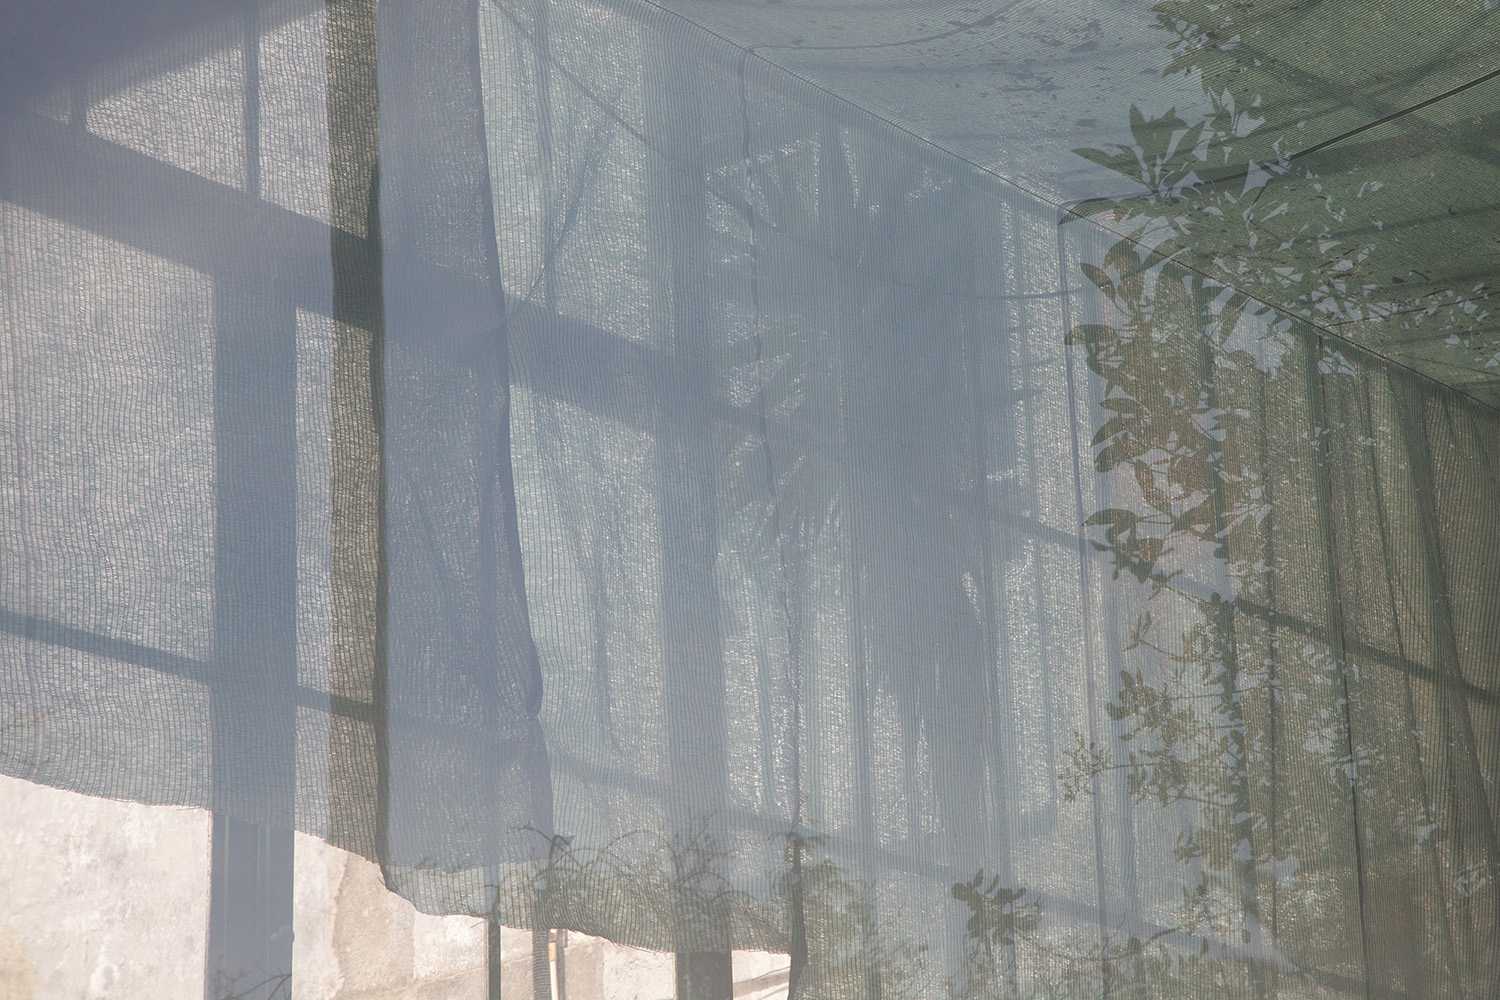 Carina Martins - A tinta esbate-se em forma de onda - sobreposições de cortinado e árvores numa janela